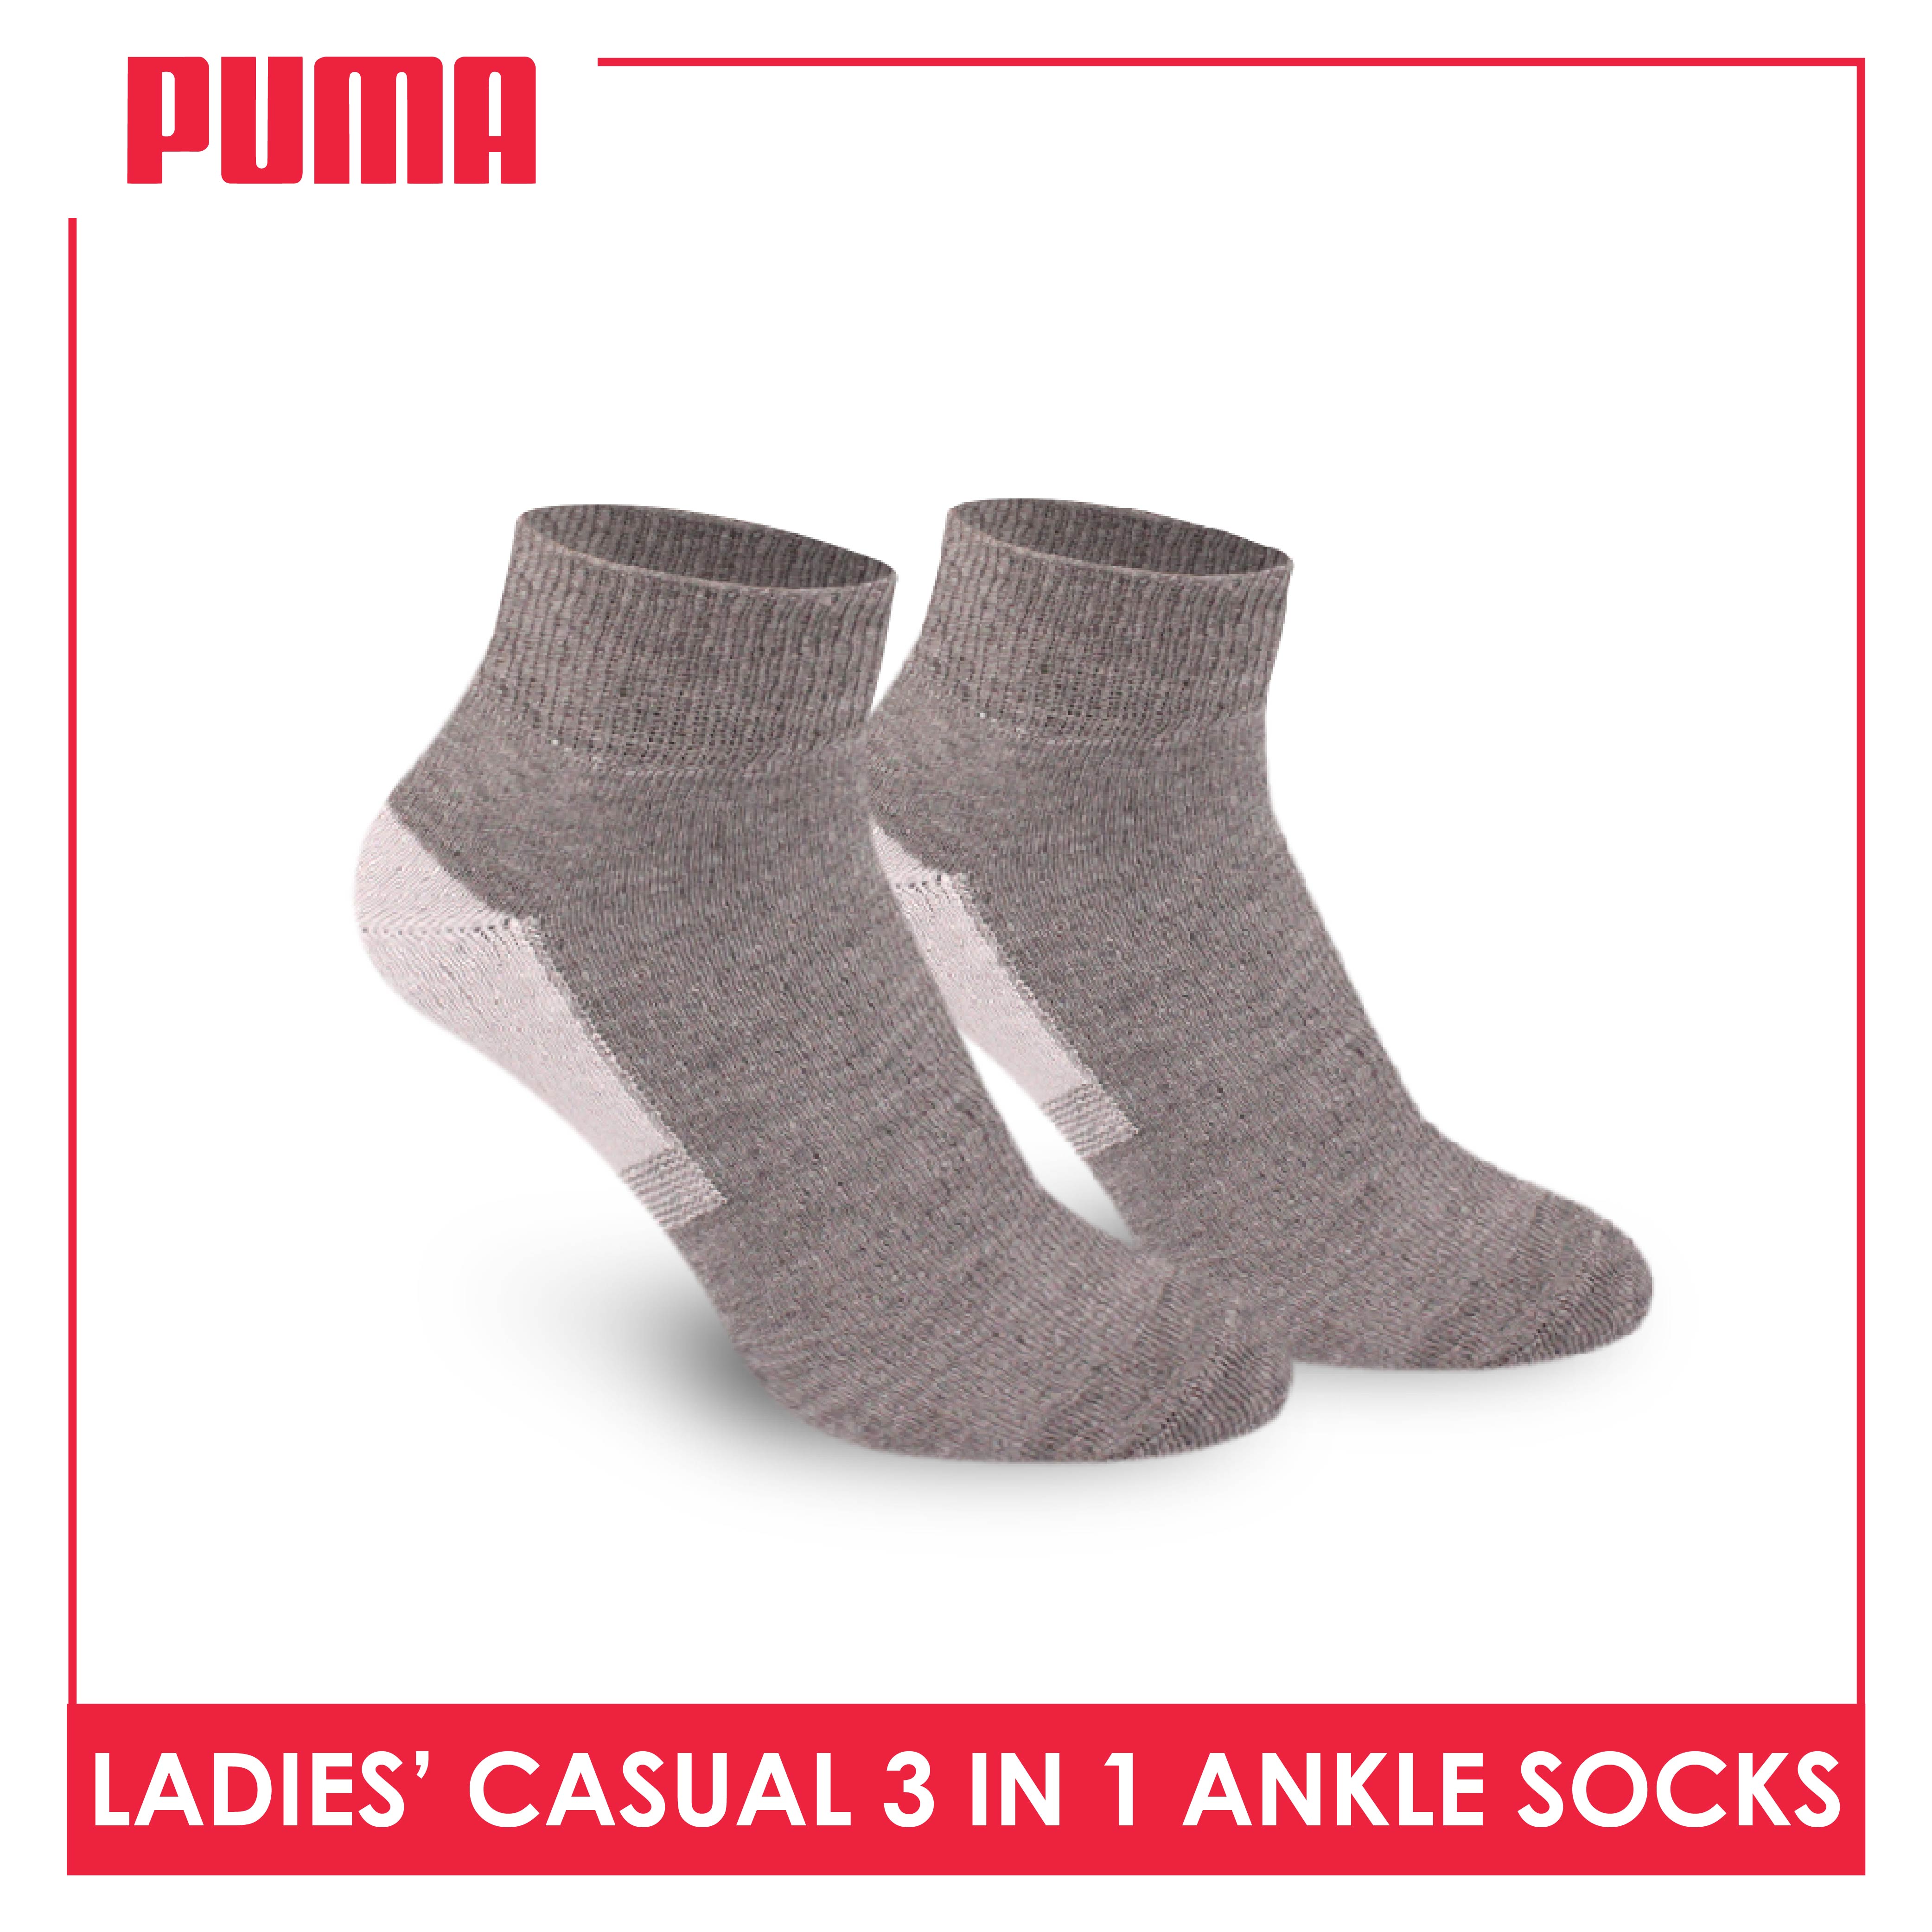 Ladies' Ankle Socks